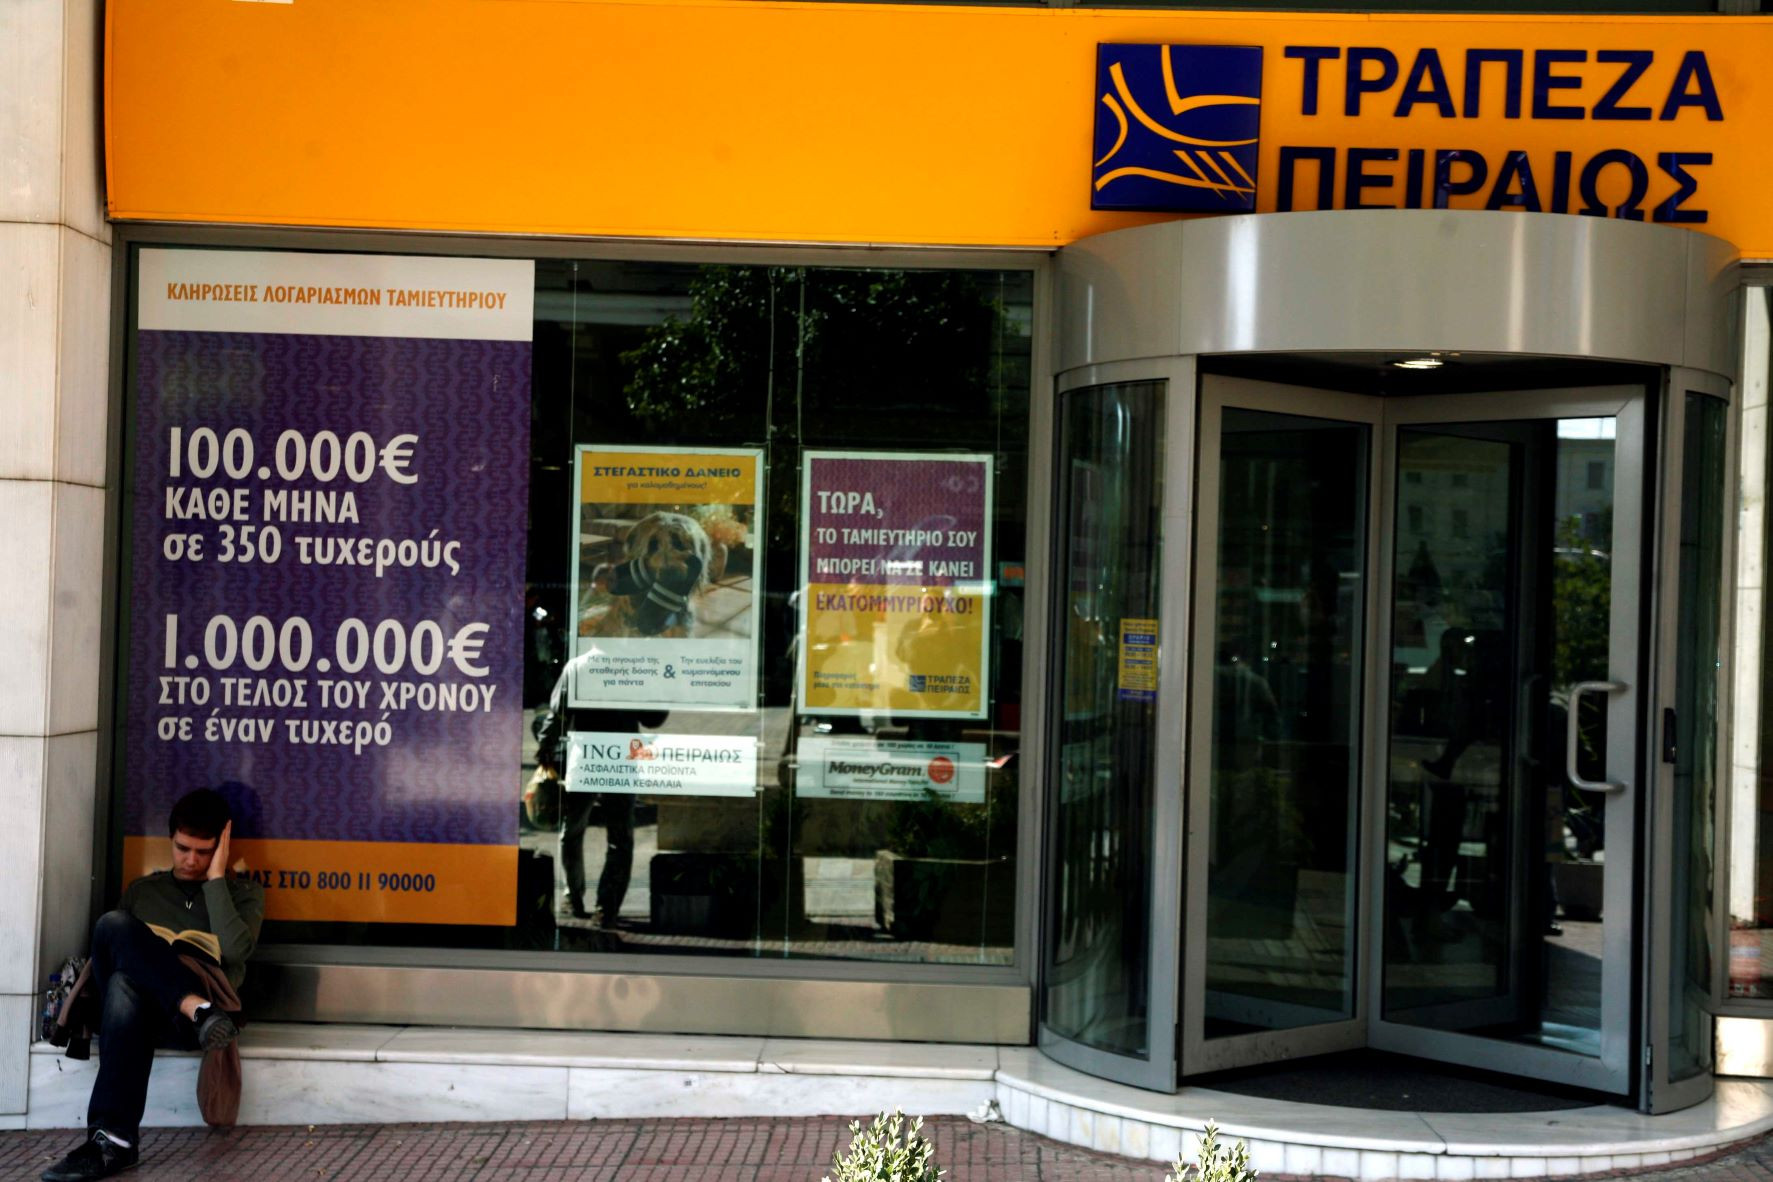 Σύλλογος Εργαζομένων Τράπεζας Πειραιώς: Βίαια περιστατικά από πελάτες σε υπαλλήλους λόγω ατελείωτων ουρών